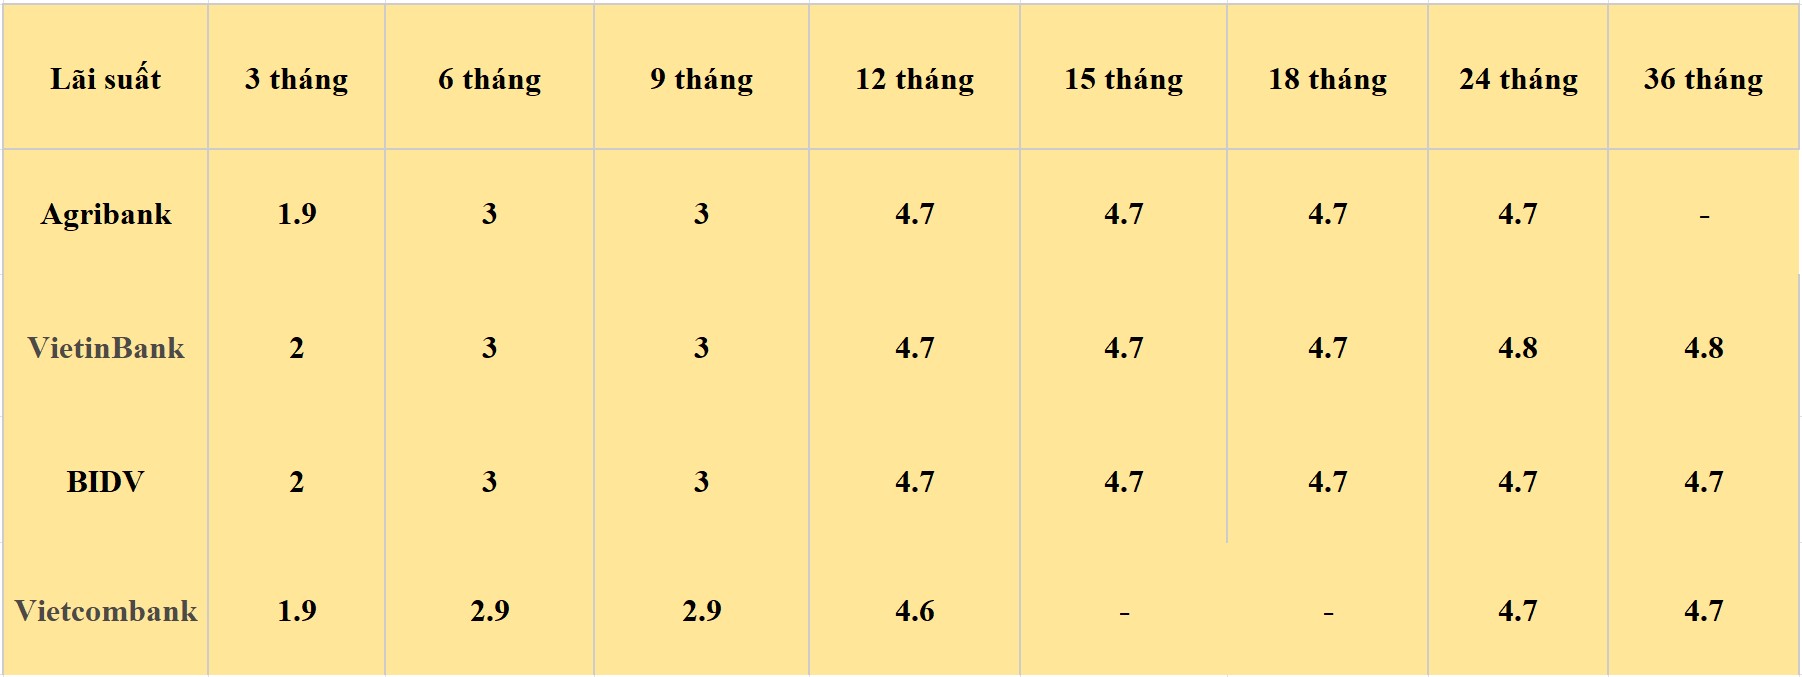 Bảng lãi suất các kỳ hạn tại Vietcombank, Agribank, VietinBank và BIDV. Số liệu ghi nhận ngày 28.5.2024. Đơn vị tính: %/năm. Bảng: Khương Duy